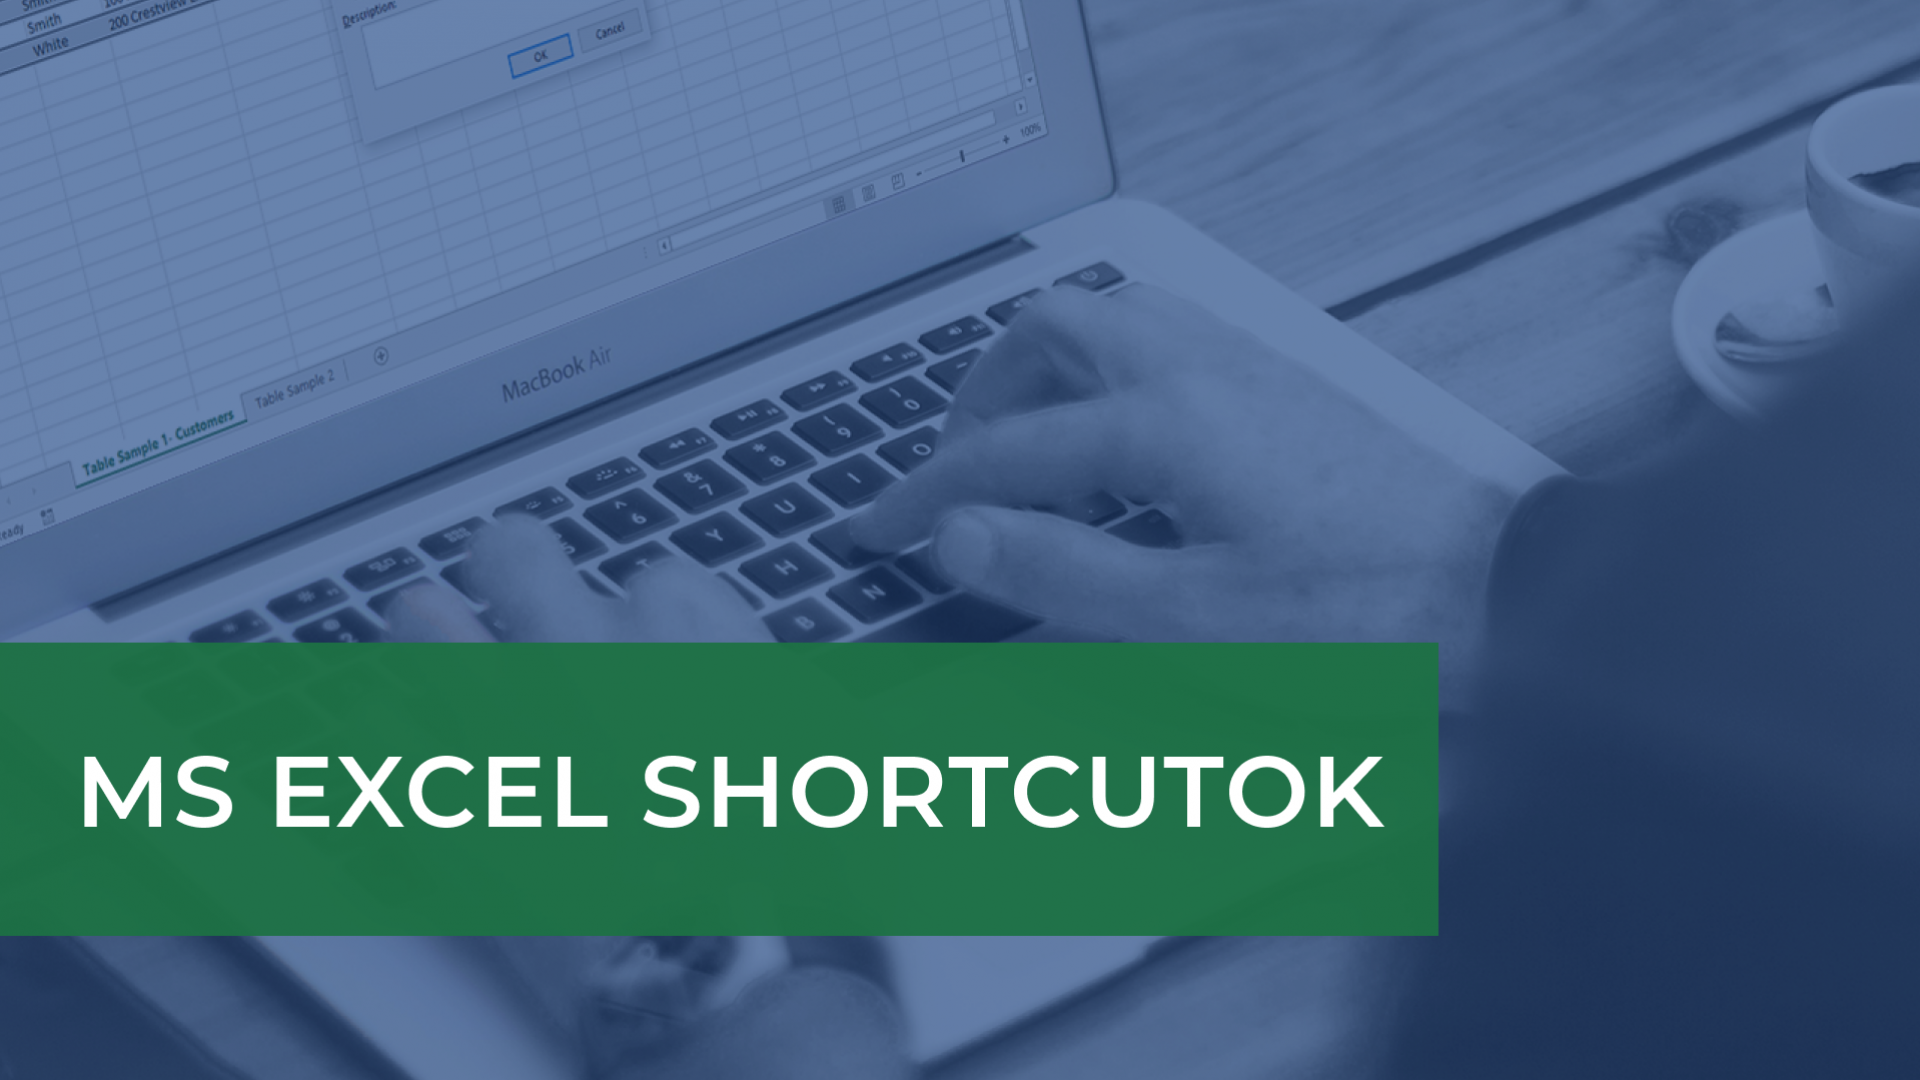 MS Excel shortcut-ok